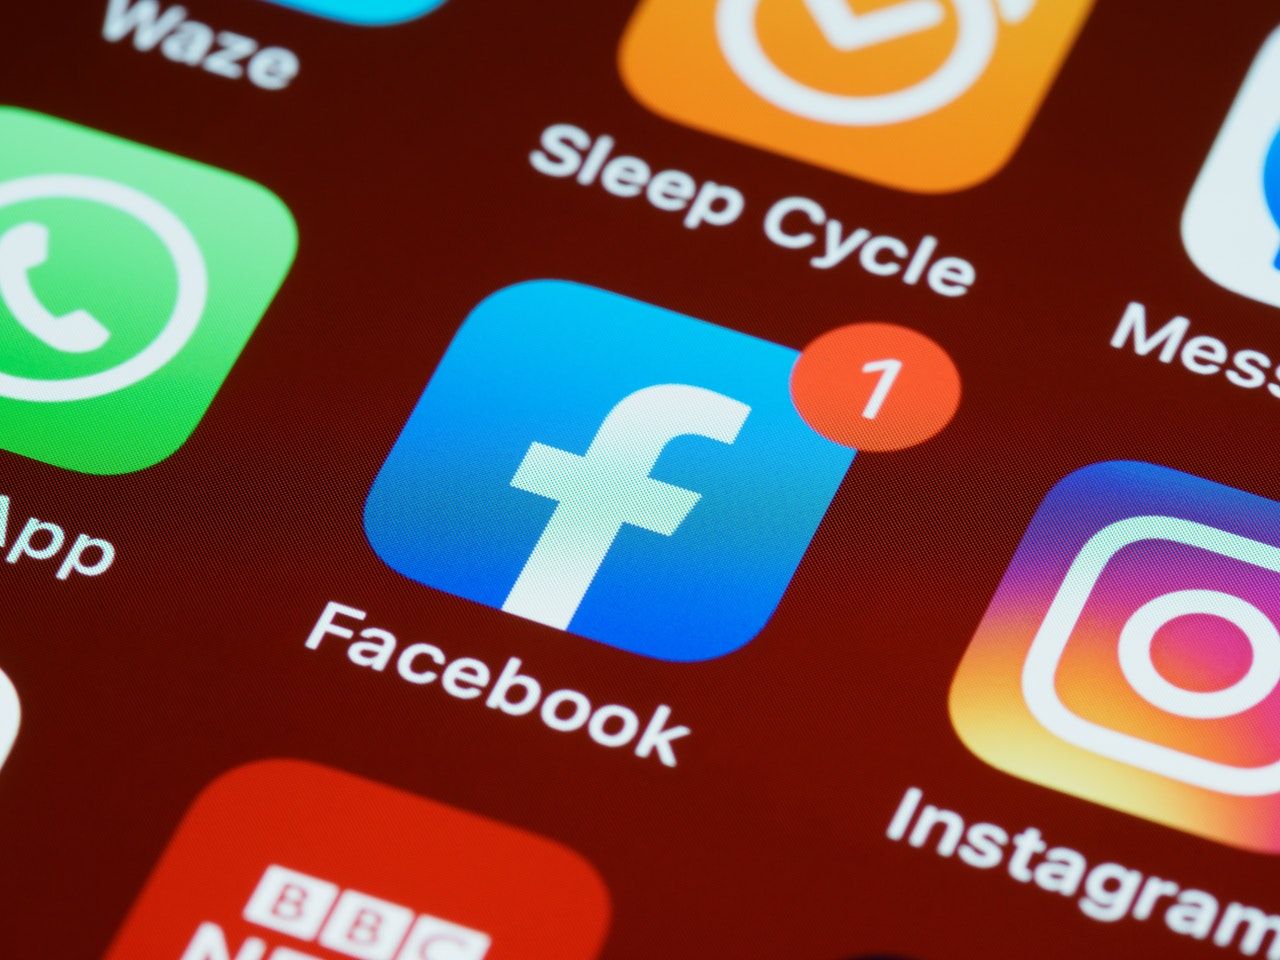 Inilah cara baru mengatasi WhatsApp, Facebook, dan Instagram yang sedang down atau sulit untuk digunakan, tak seperti biasanya. 